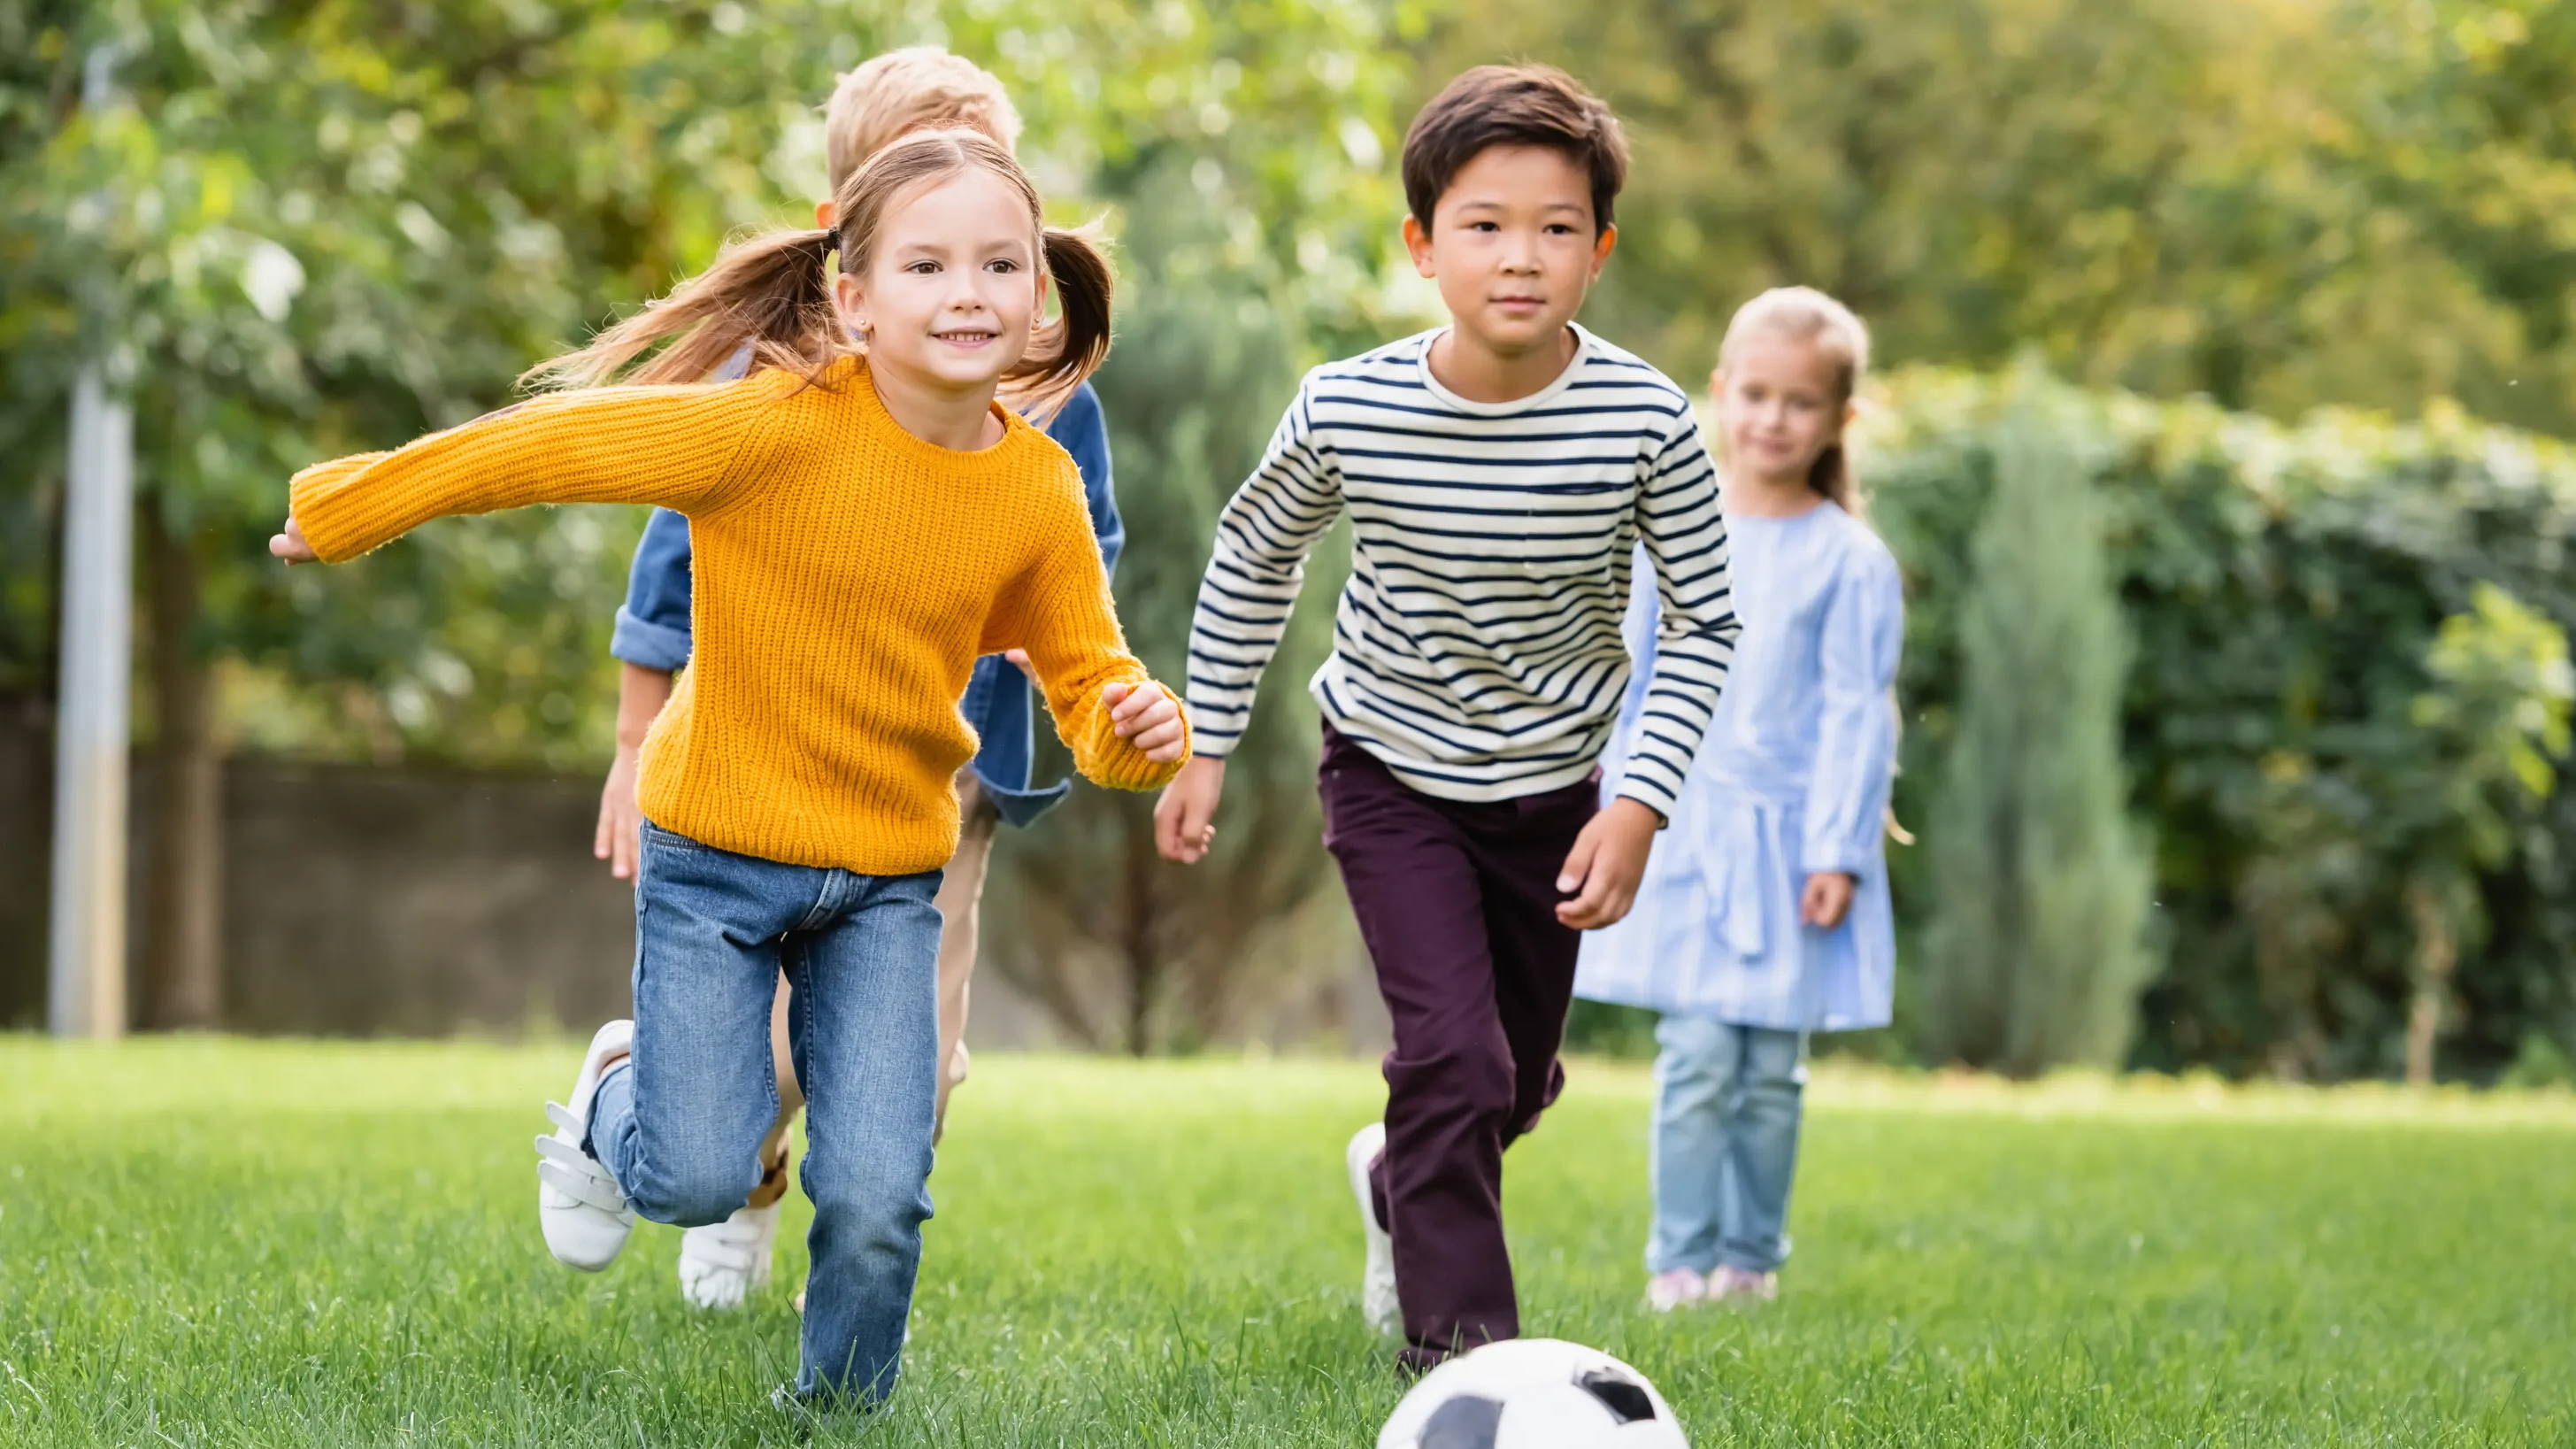 Children running through grass with a soccer ball